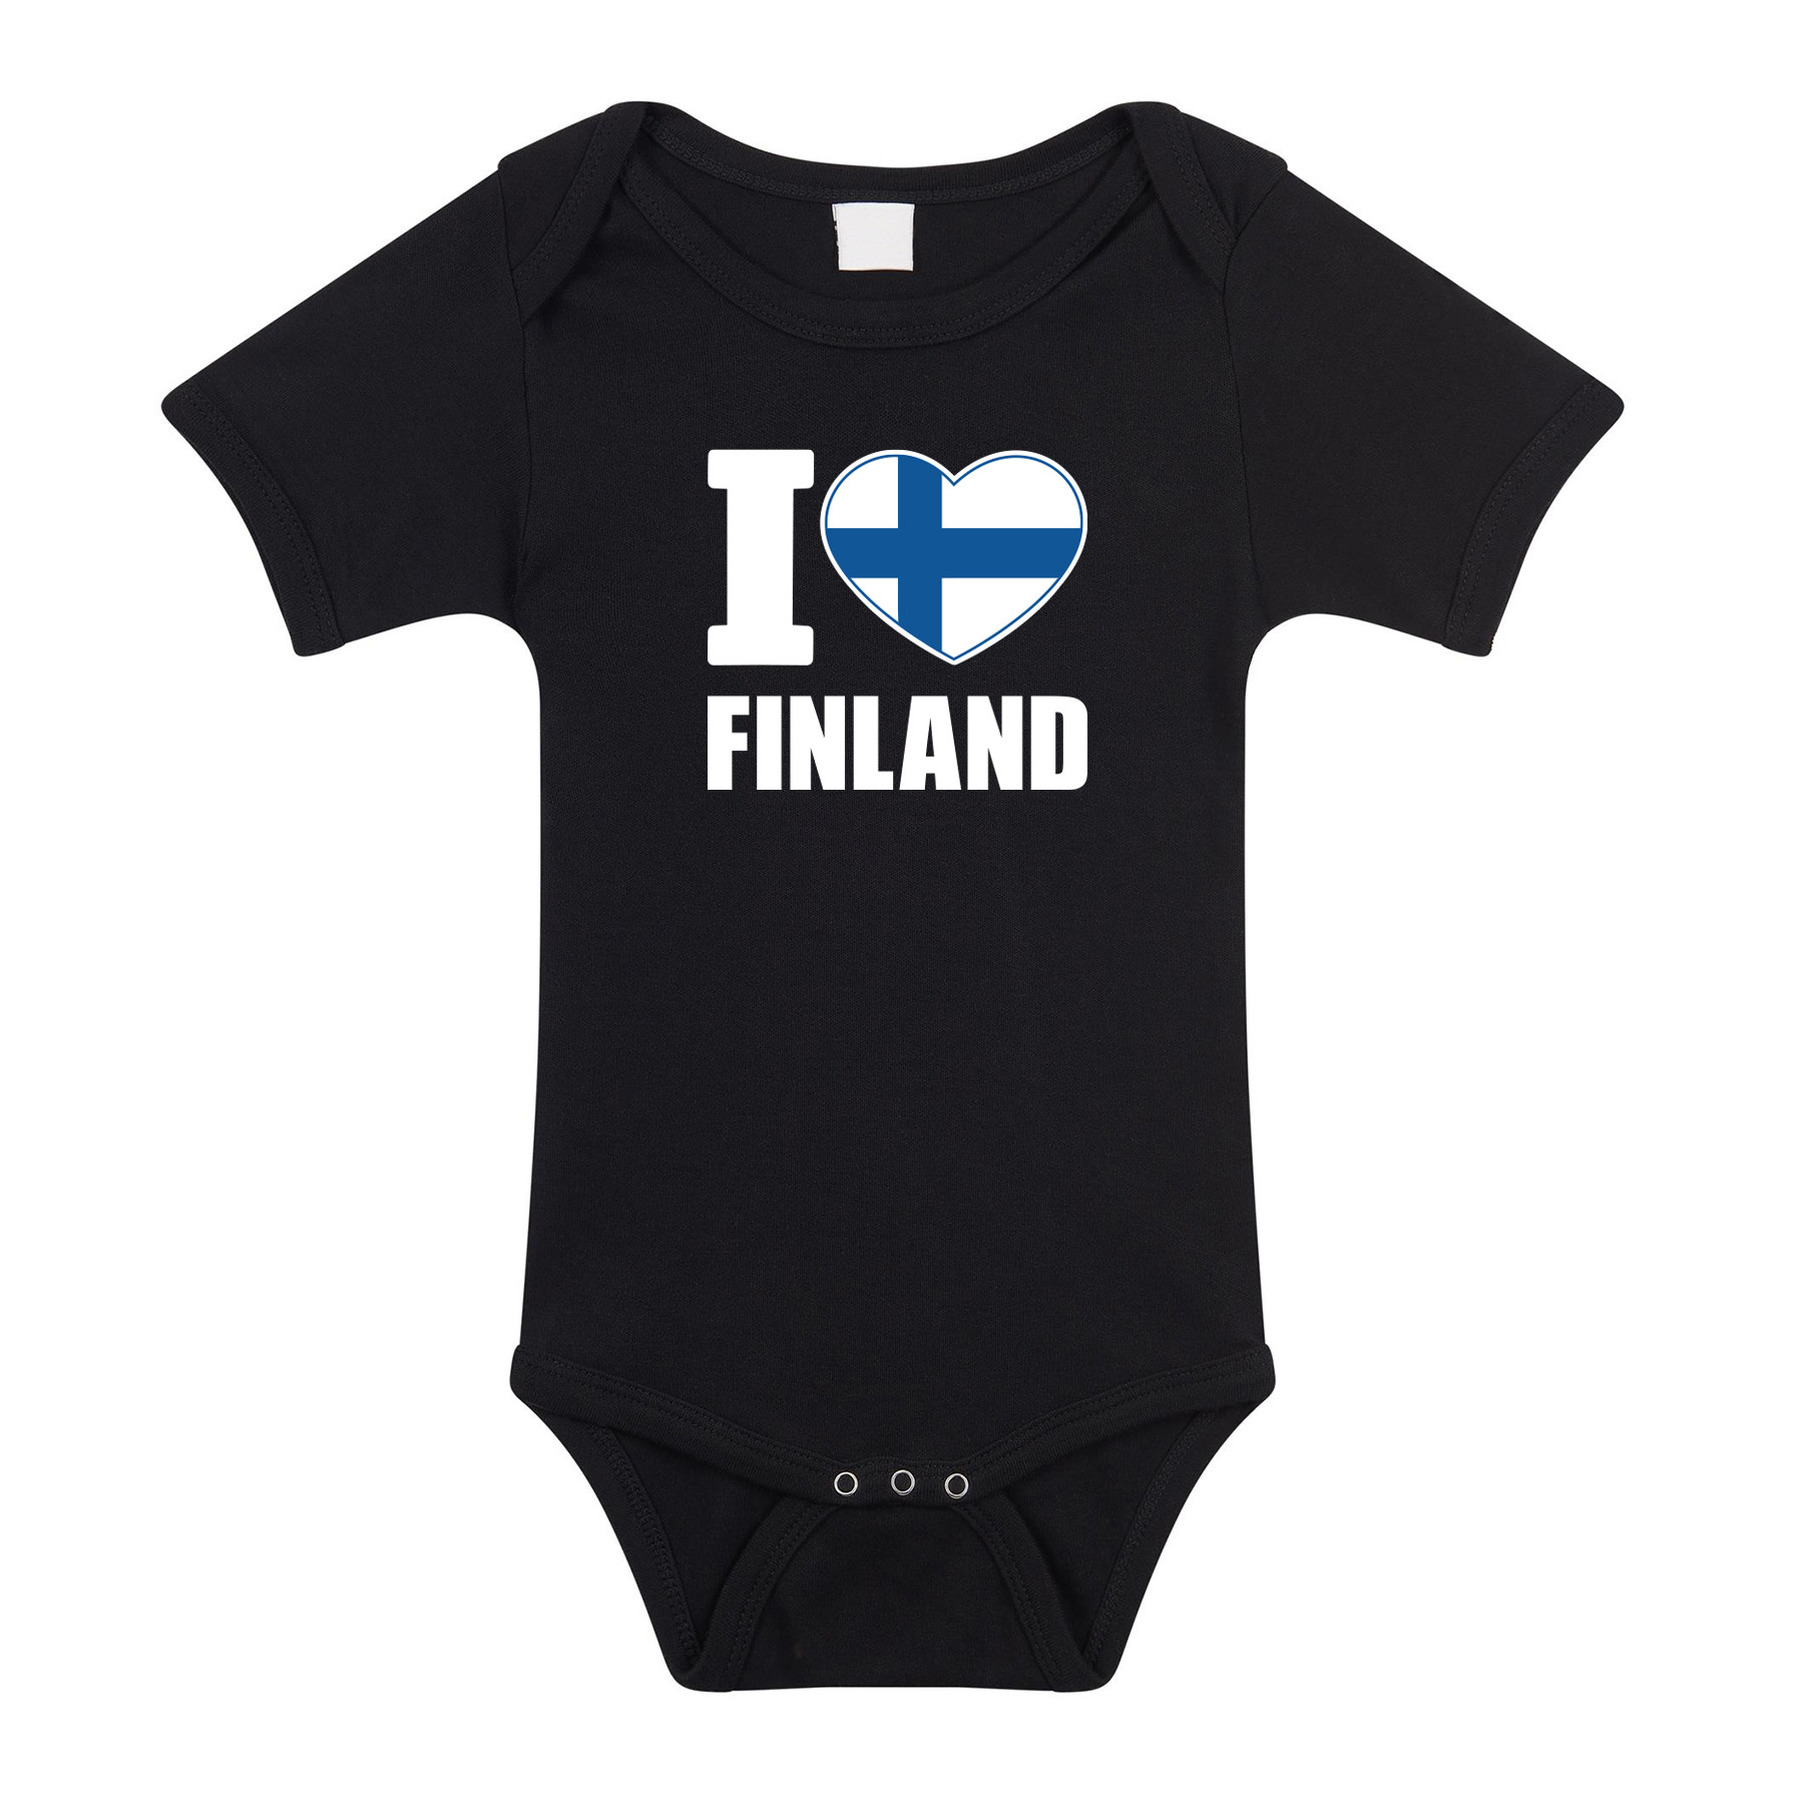 I love Finland baby rompertje zwart jongen-meisje